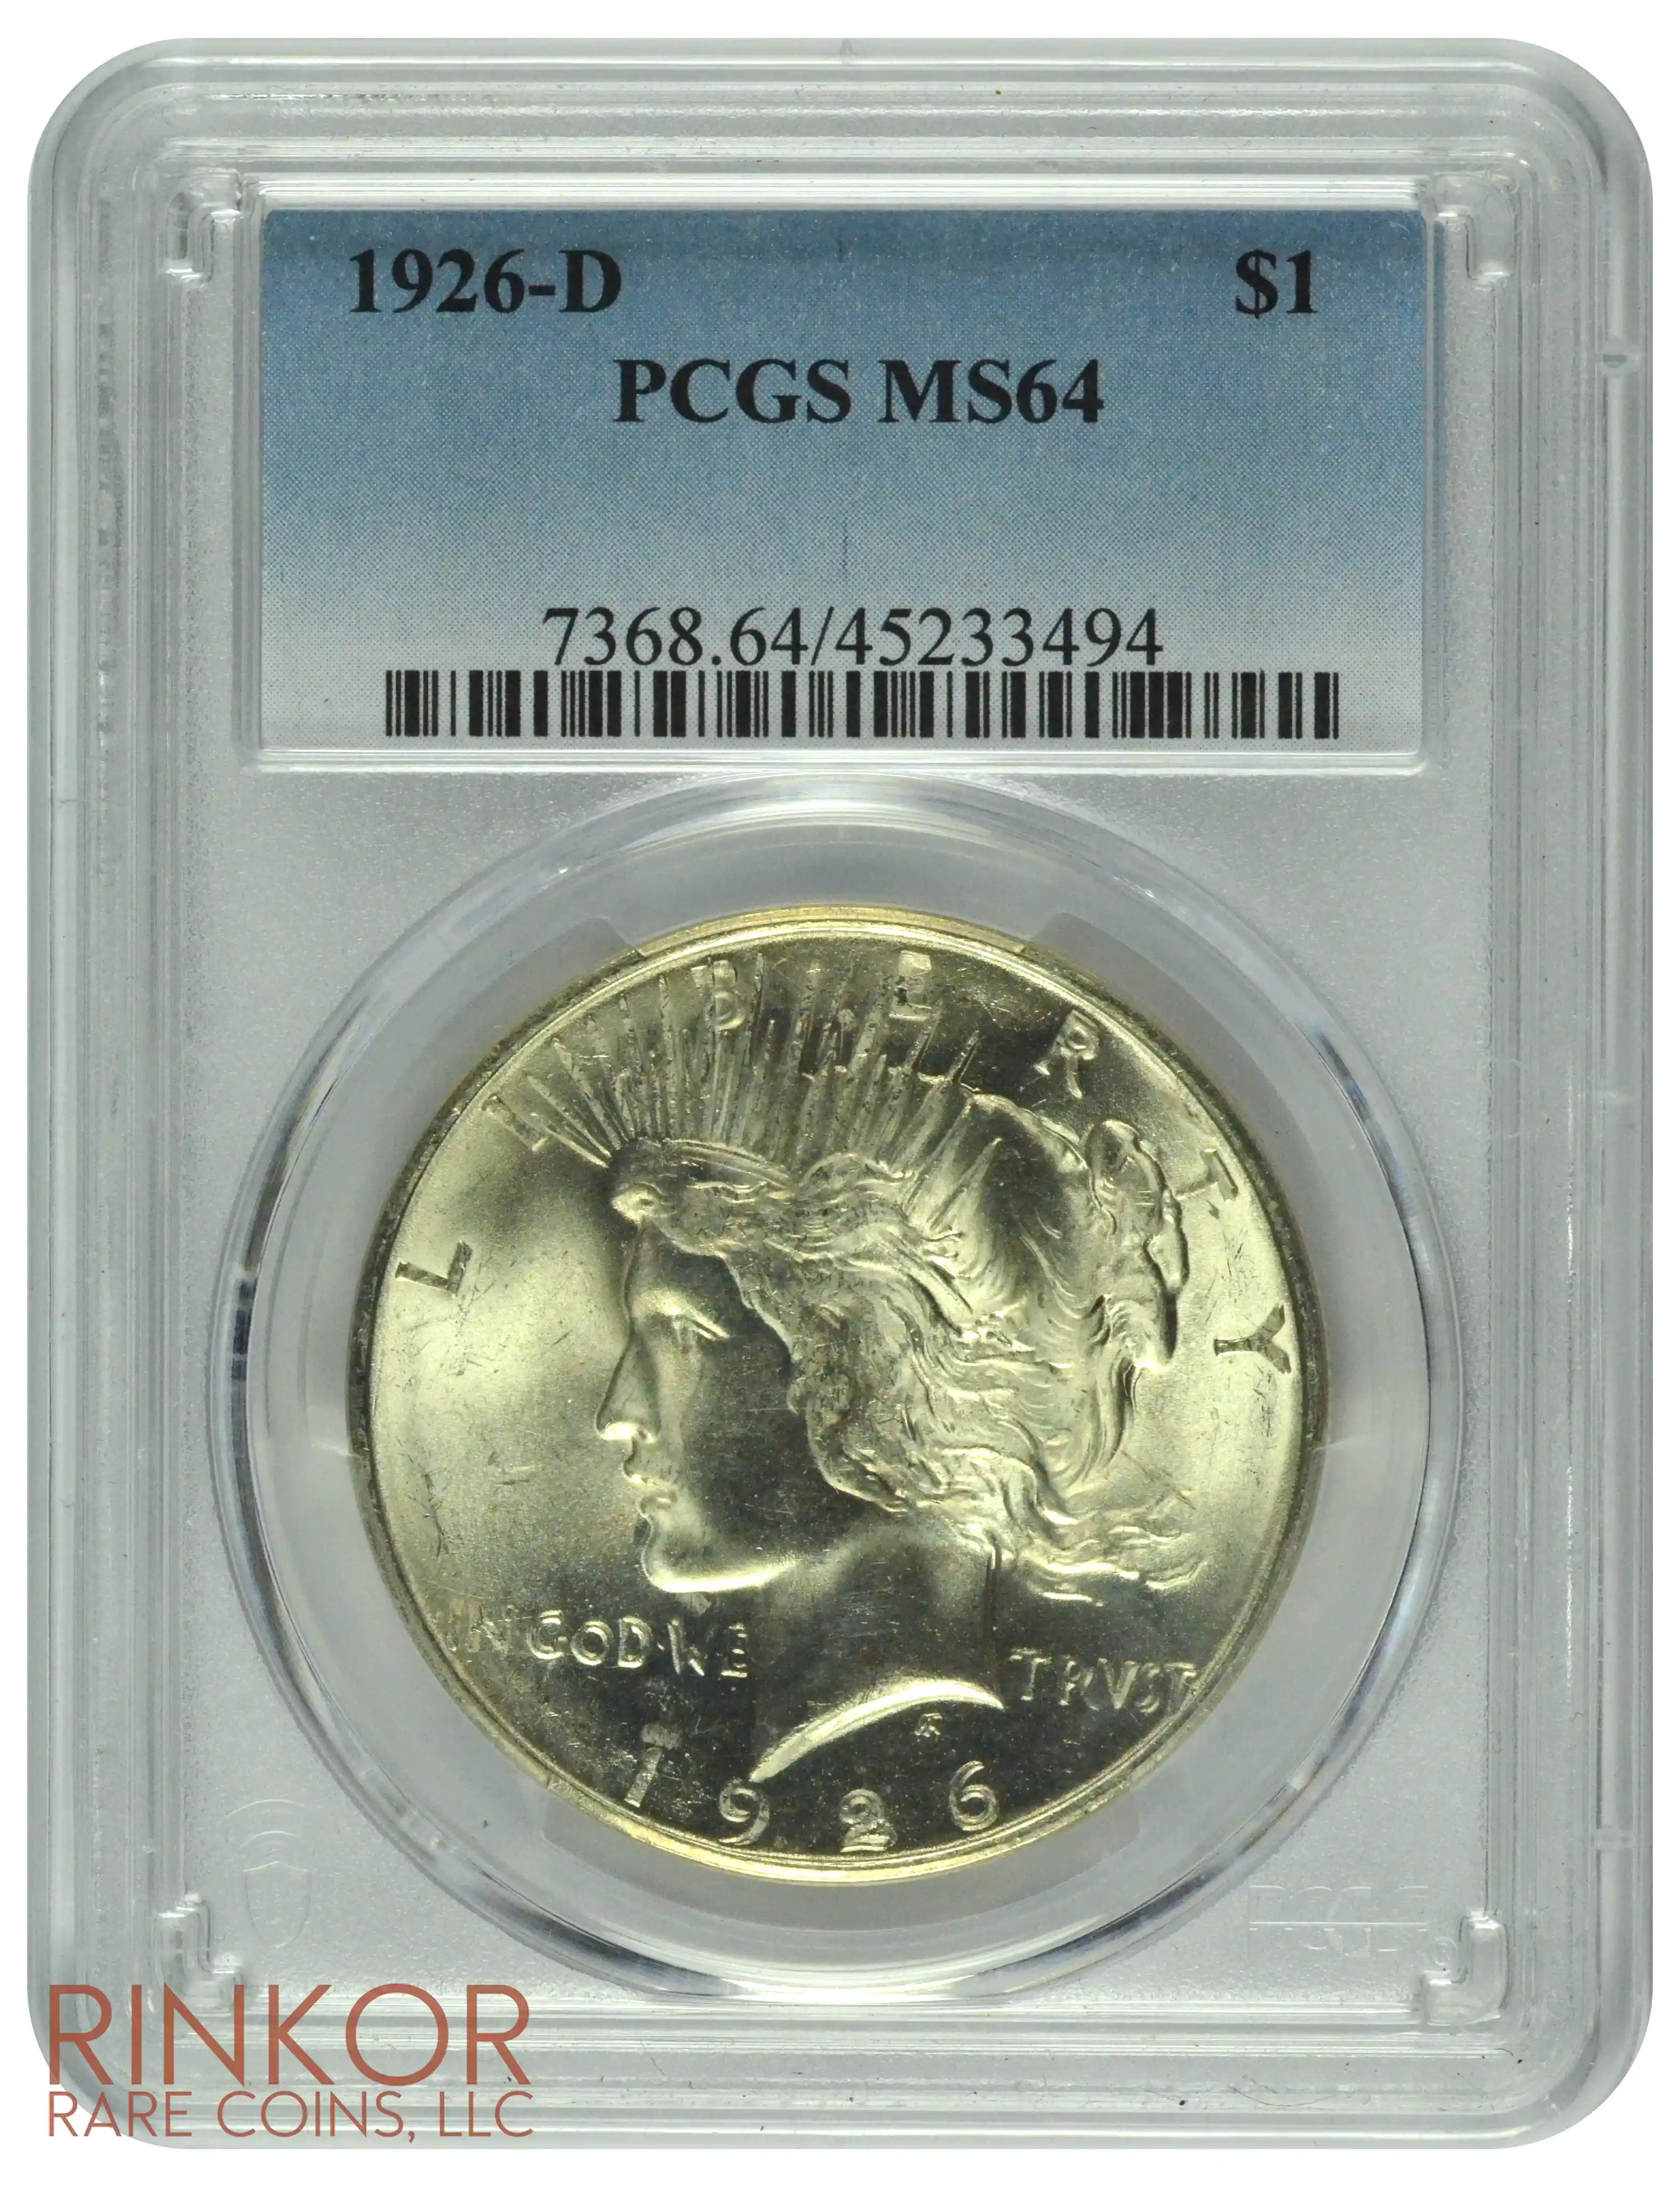 1926-D $1 PCGS MS 64